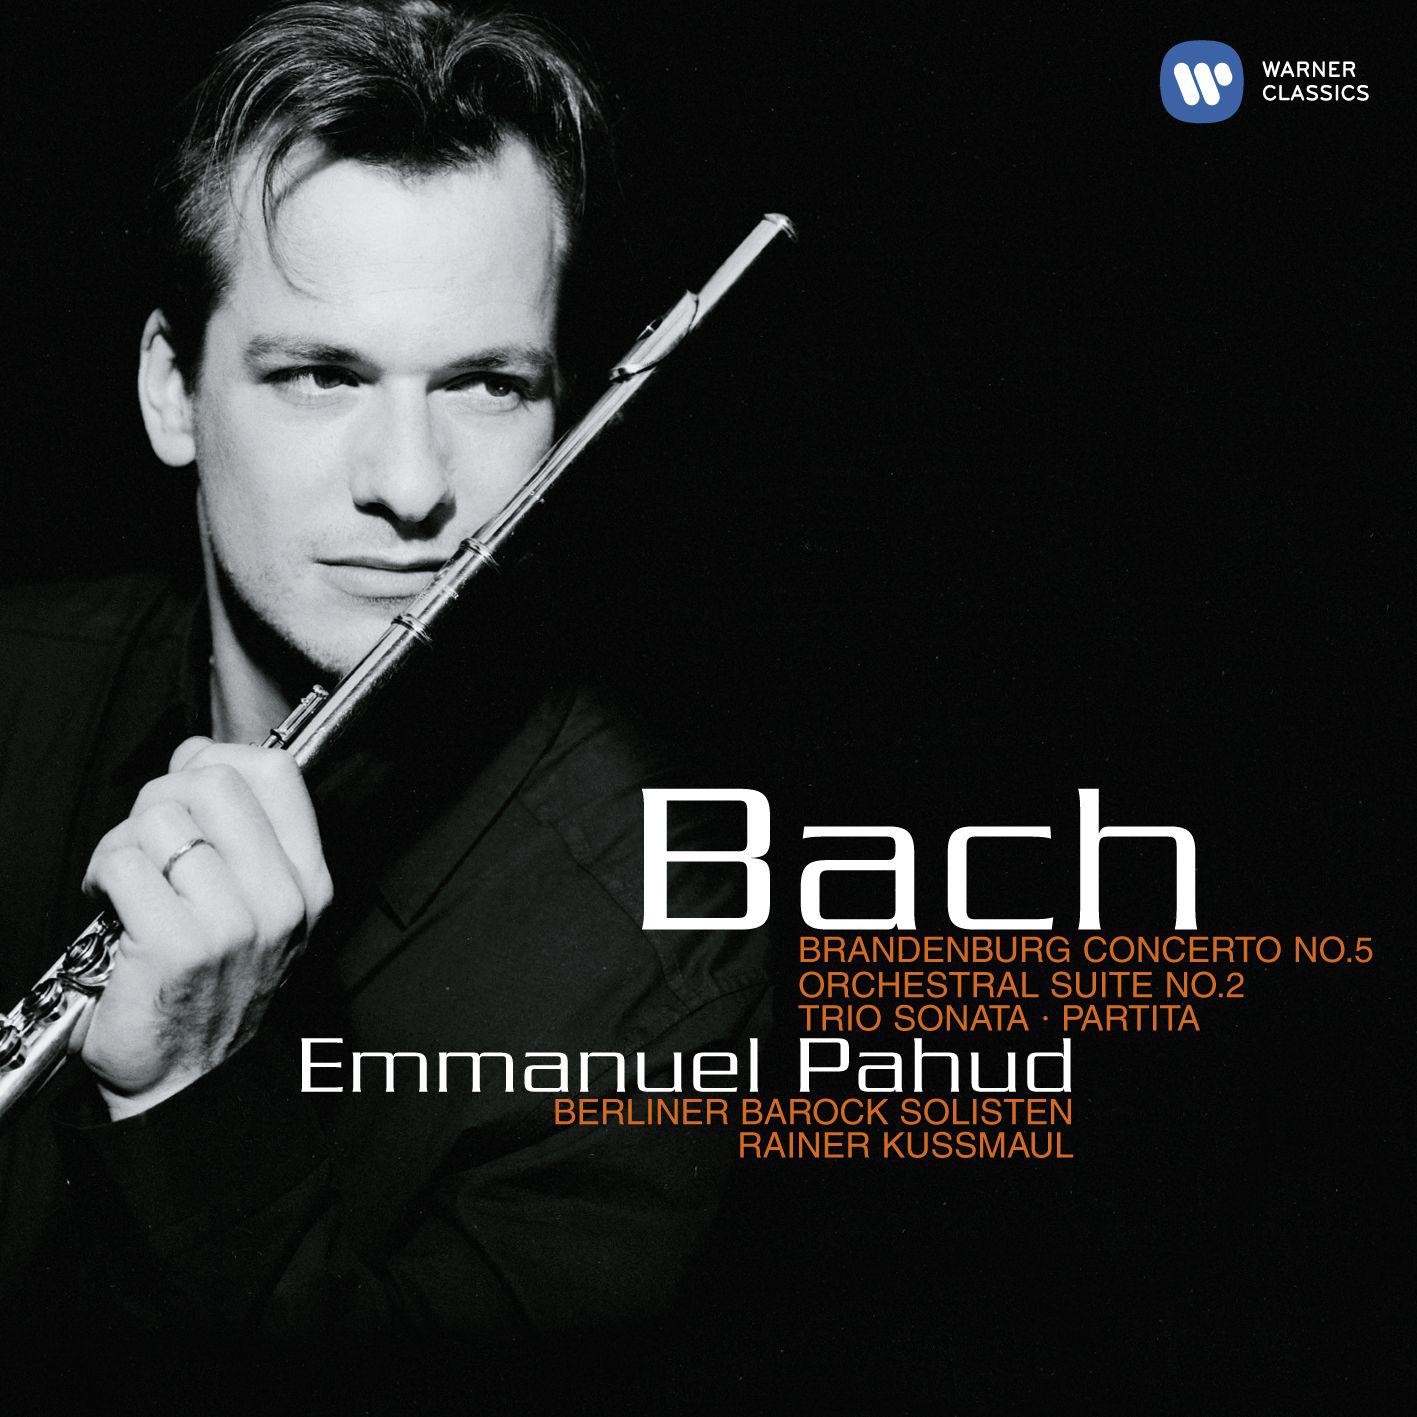 Bach: Brandenburg Concerto No. 5 - Orchestral Suite No. 2 - Trio Sonata - Partita.